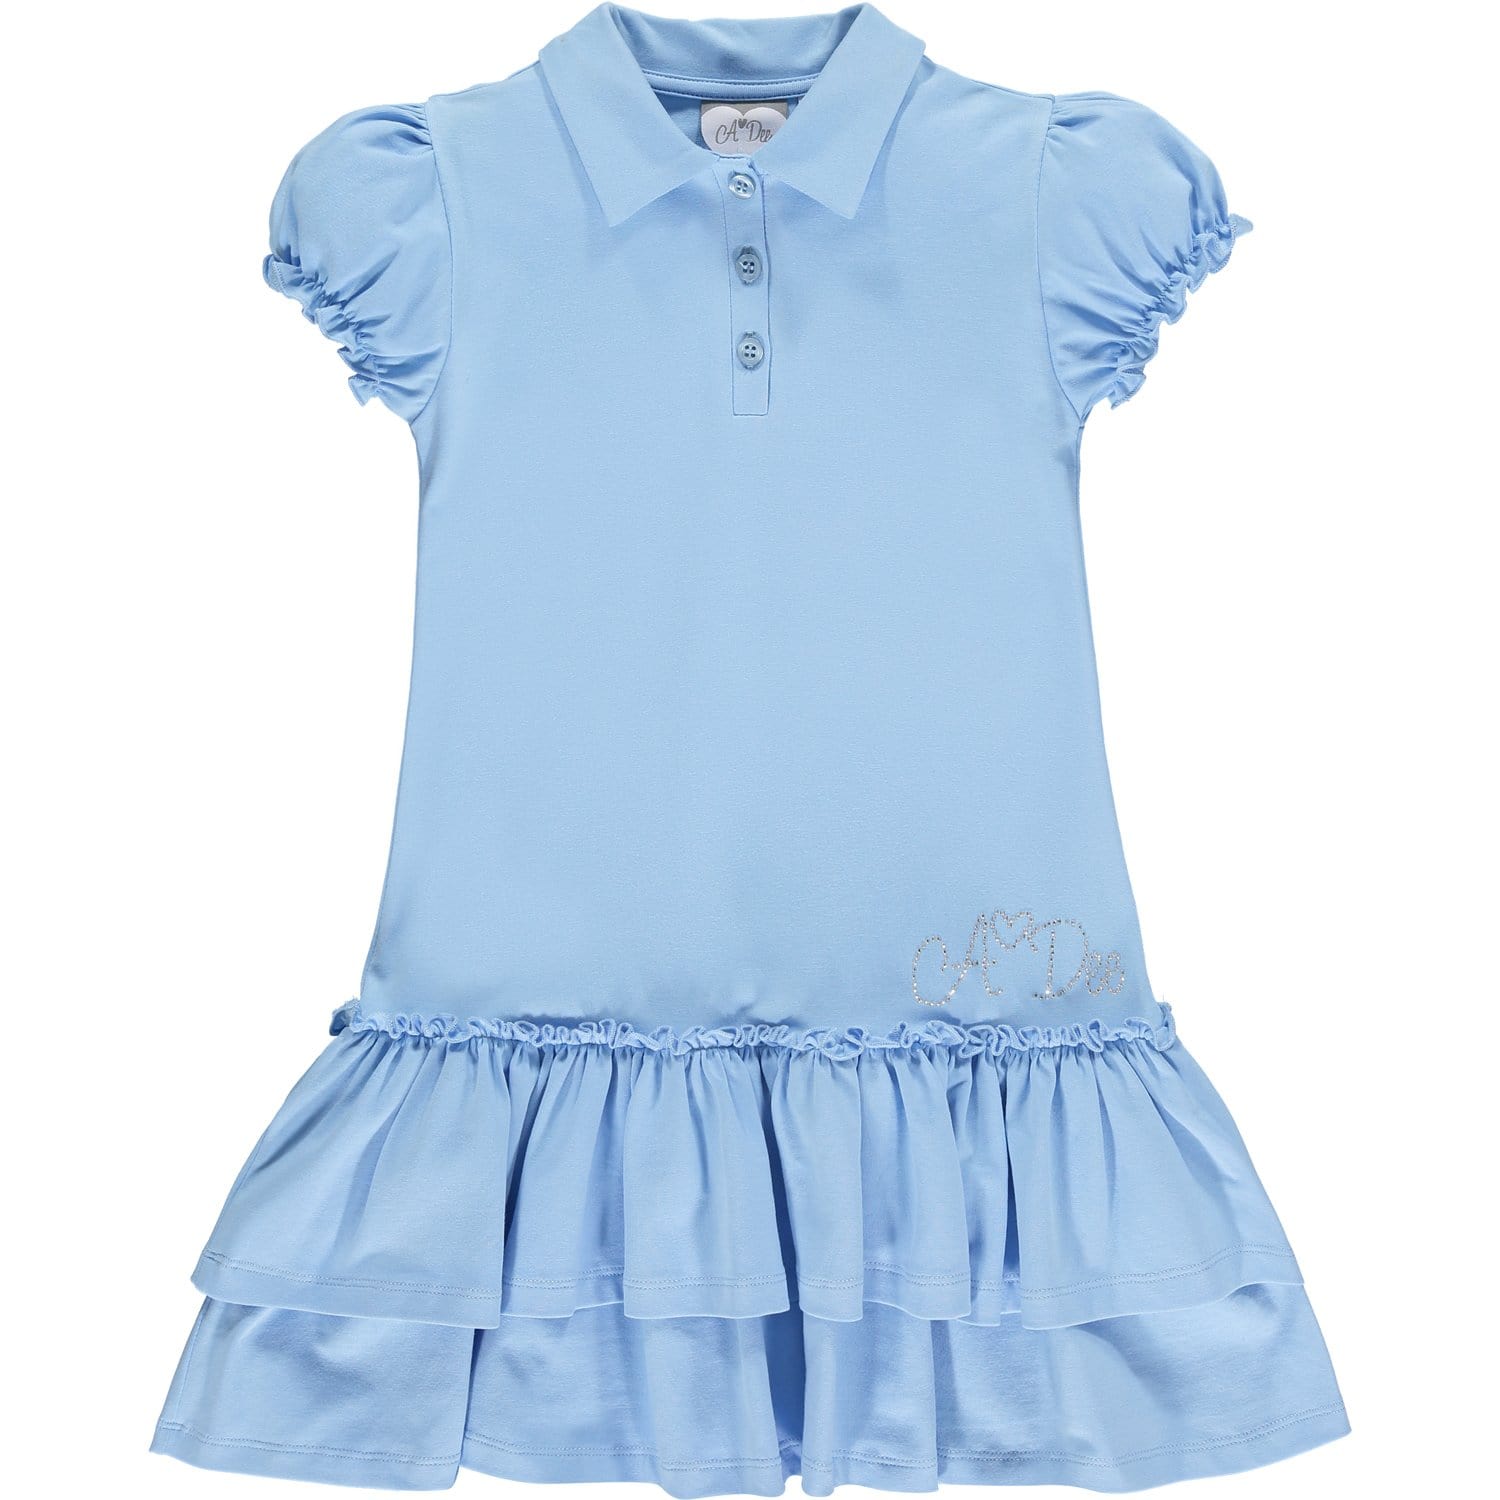 A DEE - Jenna Tennis Dress - Light Blue